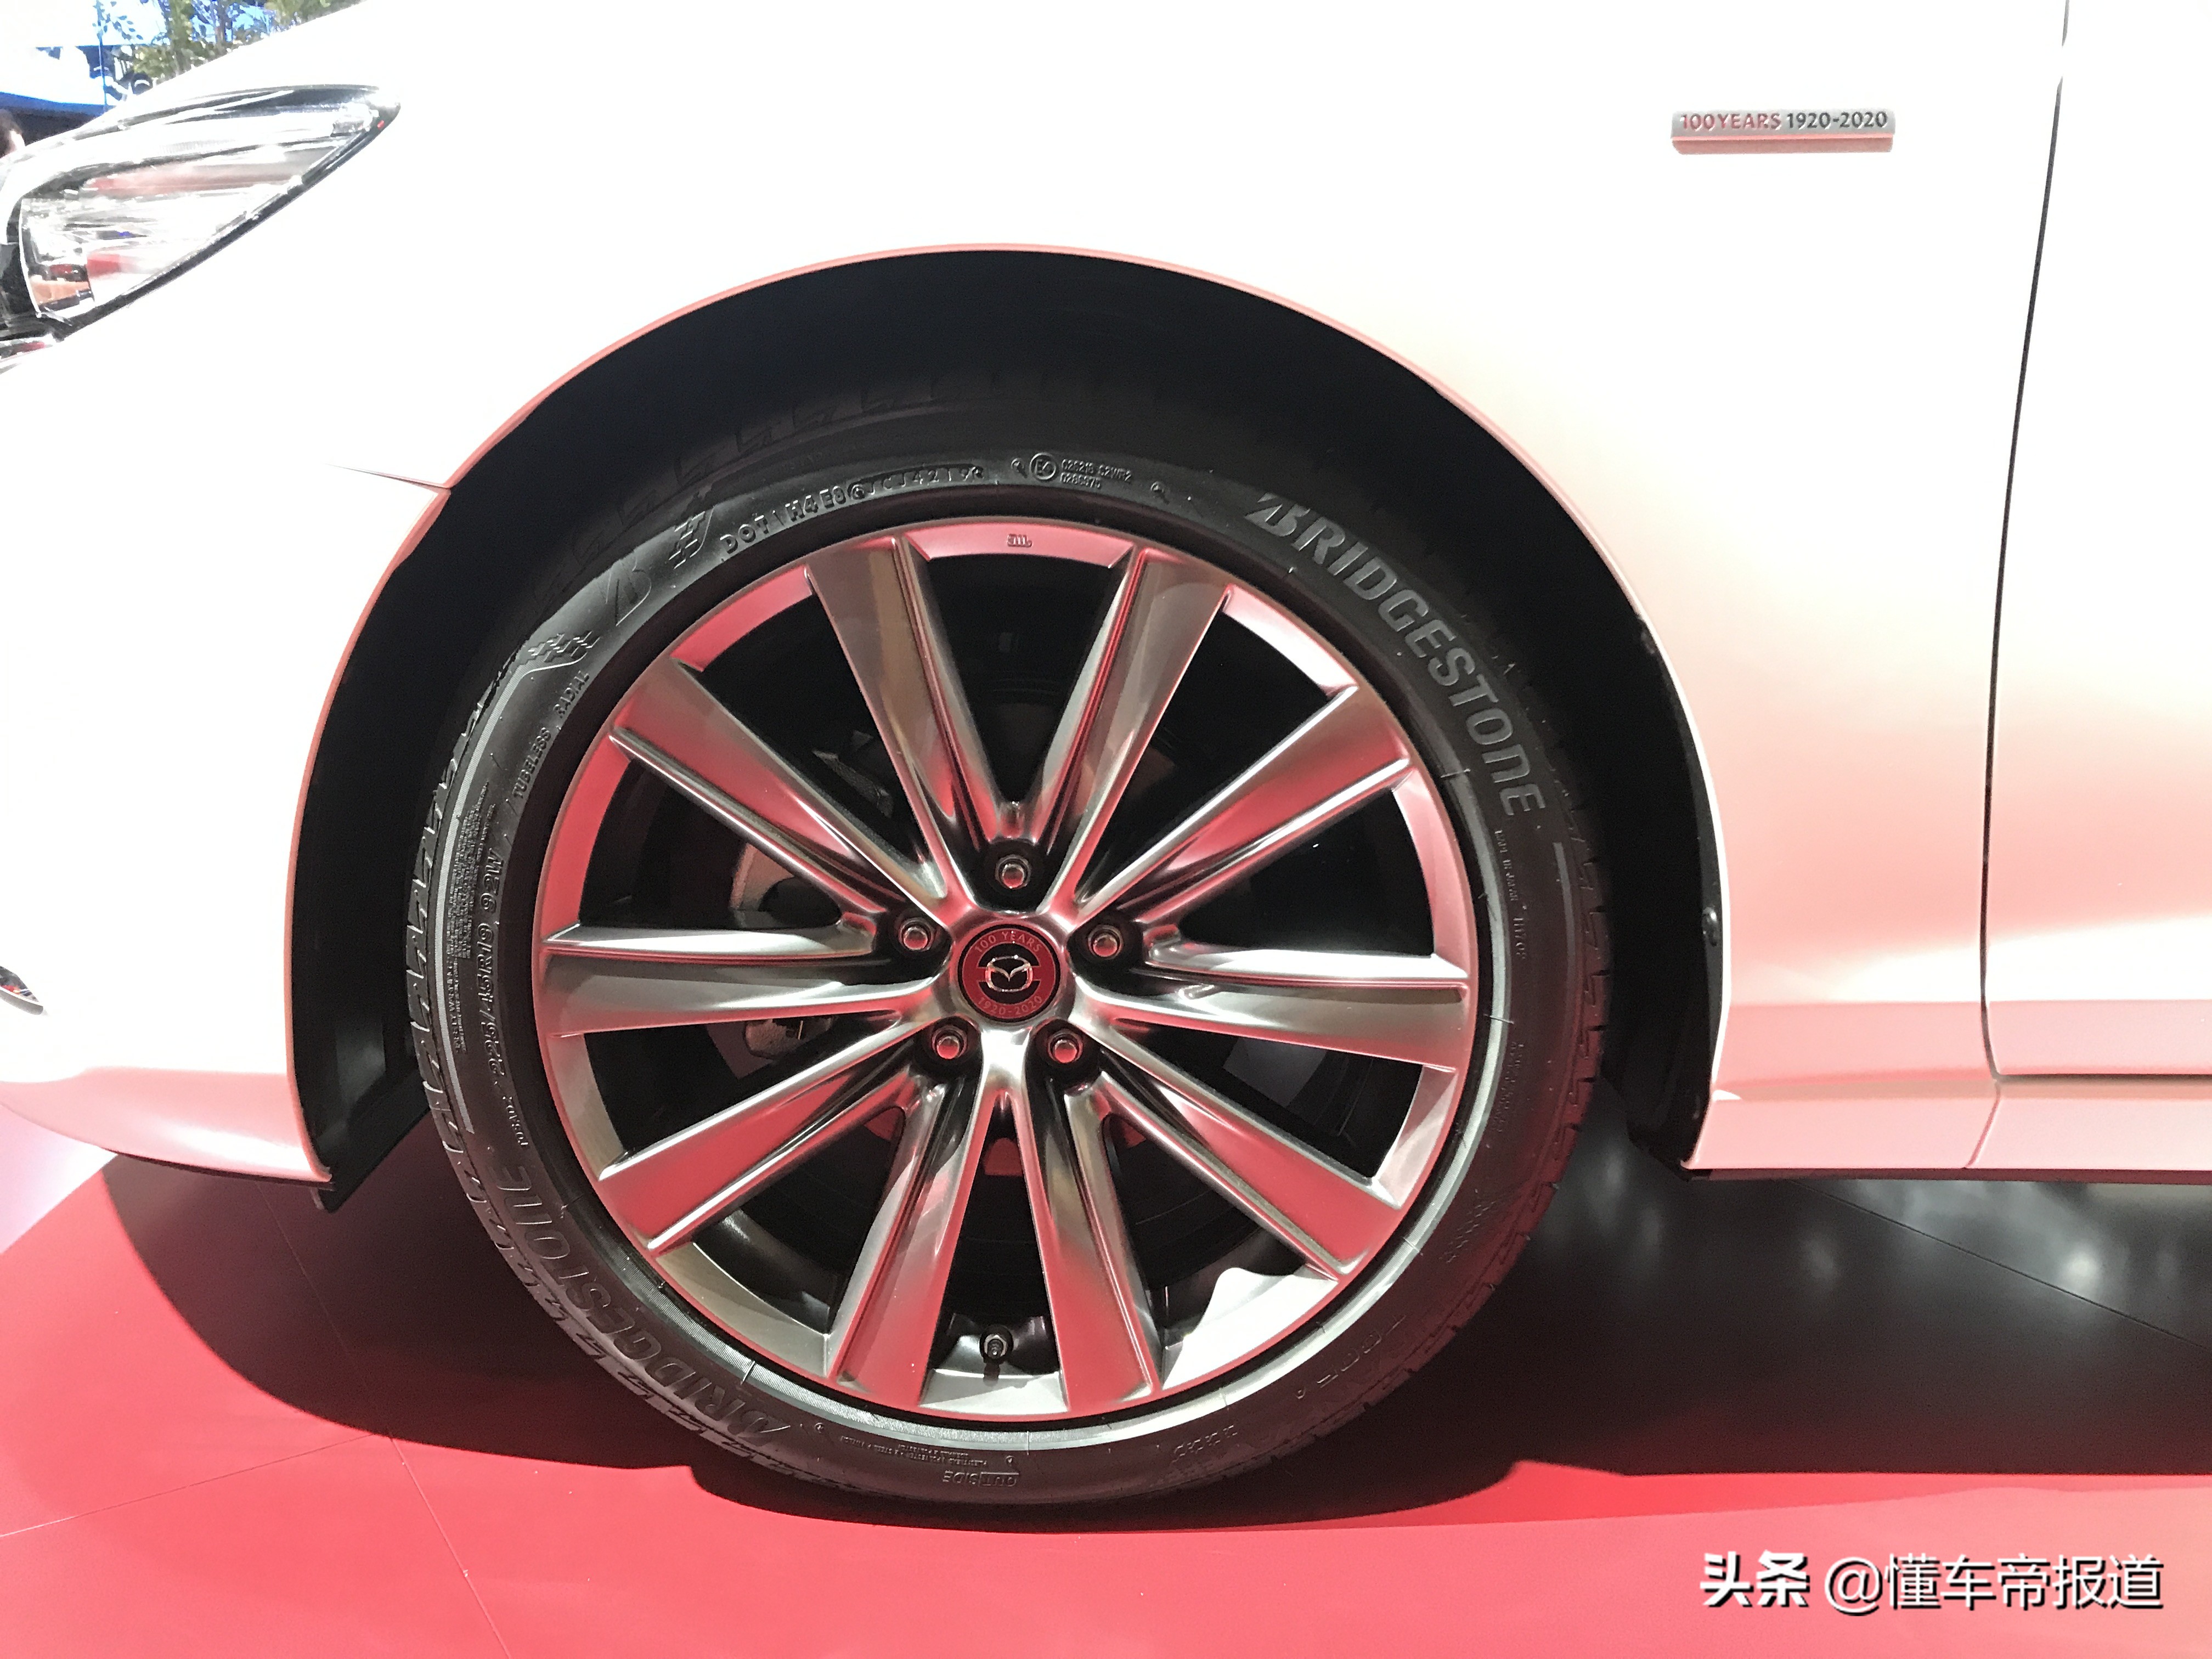 新车 | 阿特兹100周年纪念版北京车展上市 售24.78万